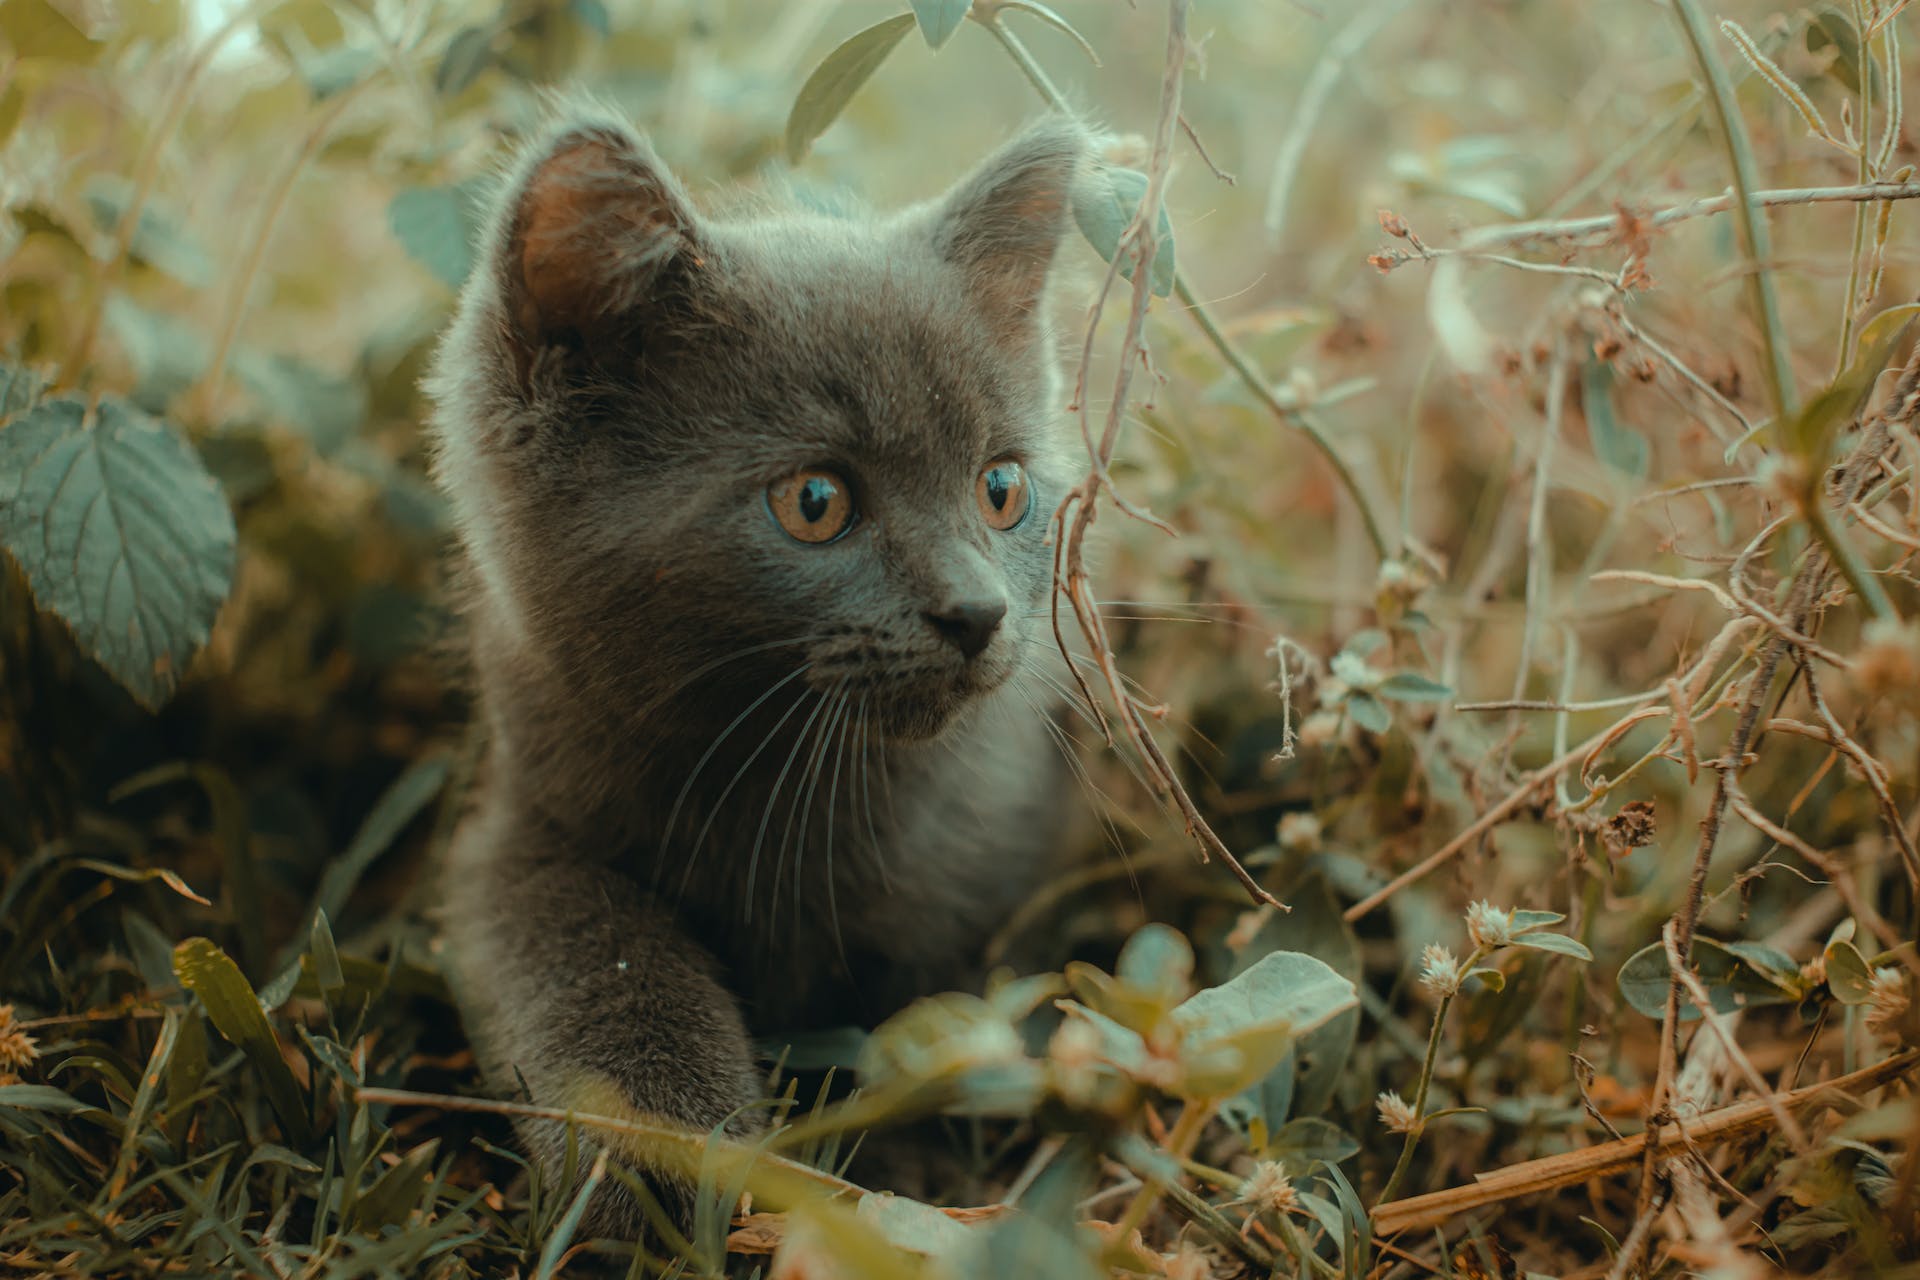 A cat exploring a leafy garden